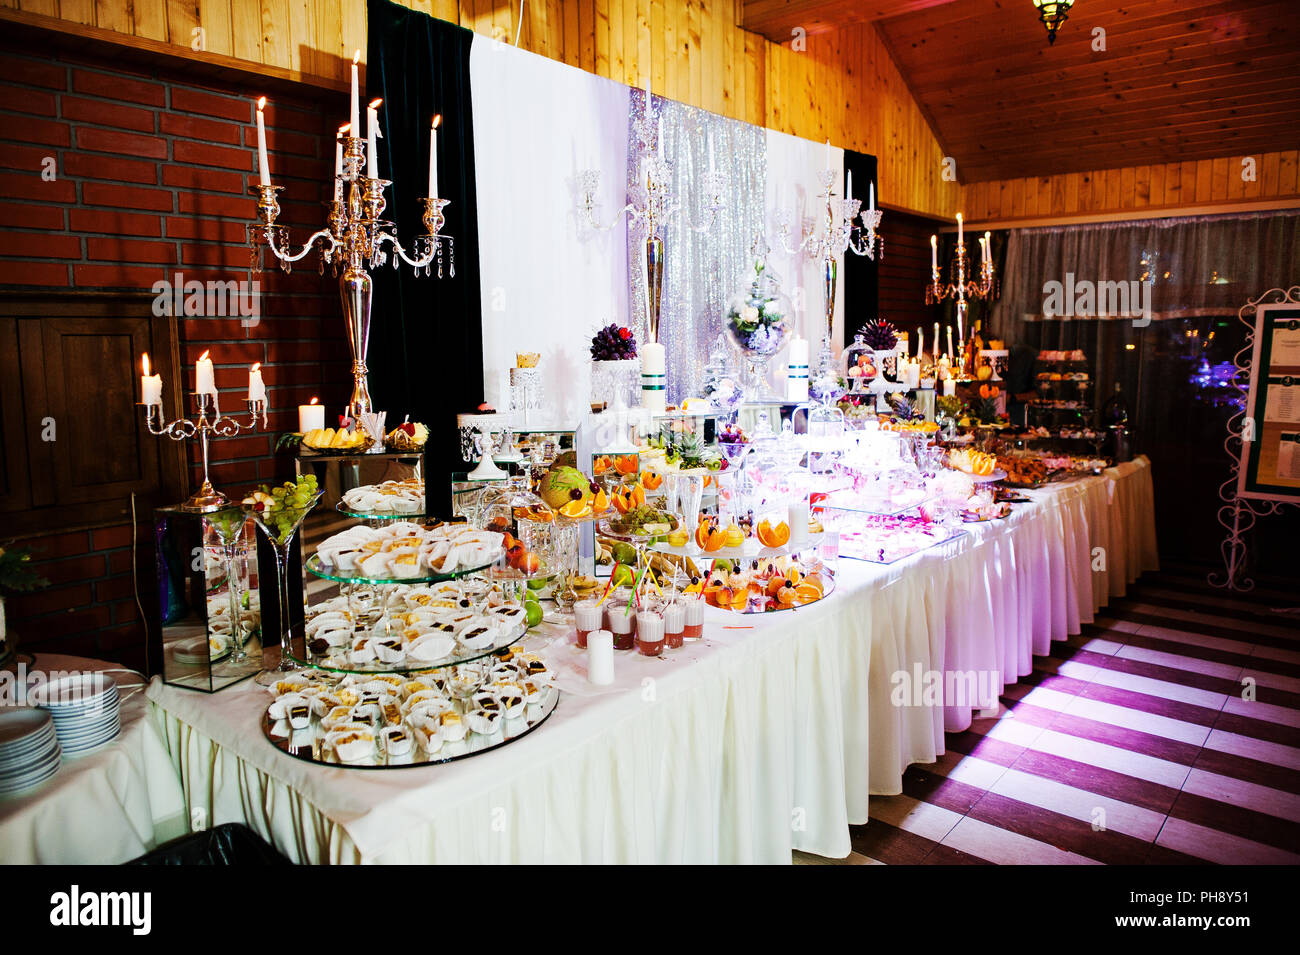 Table de réception de mariage élégance avec de la nourriture et le décor. Bougie allumée Banque D'Images